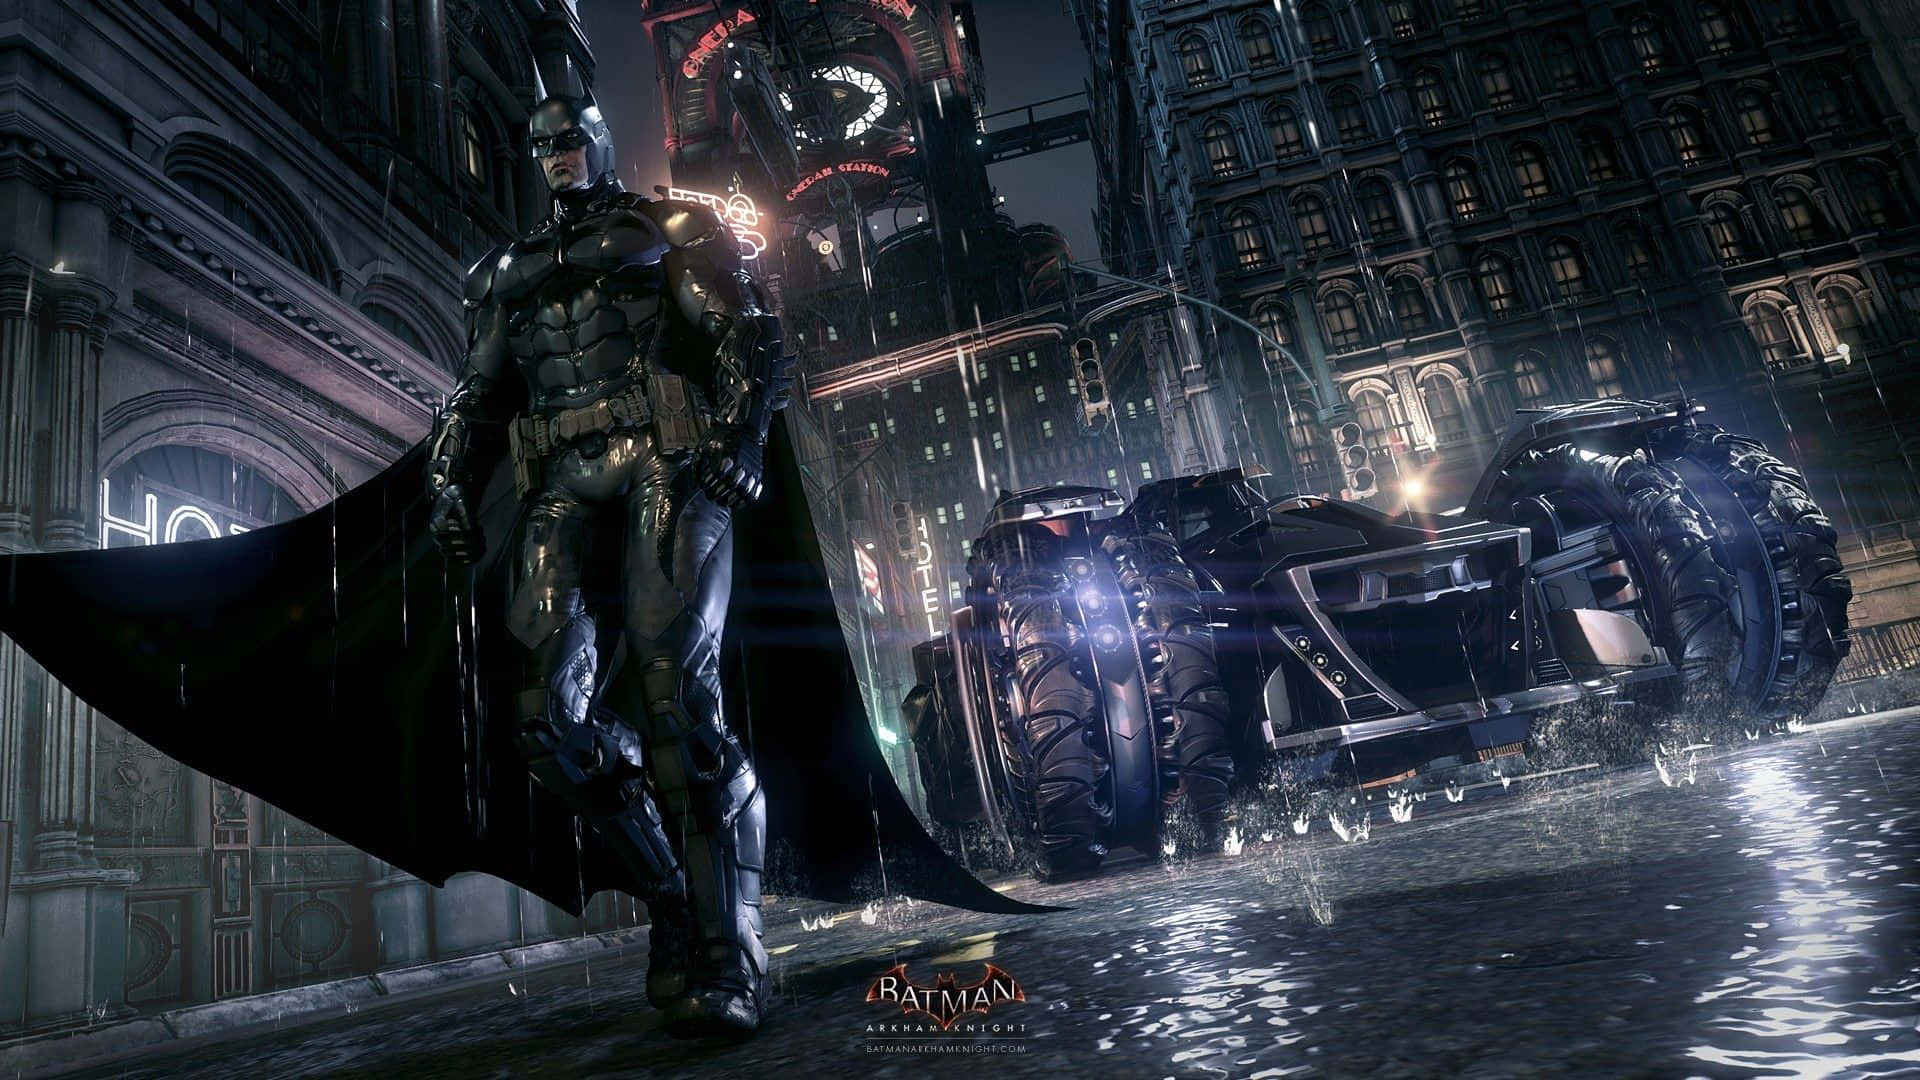 Enepisk Konfrontation Mellan Batman Och Arkham Knight I Fantastisk 4k Kvalitet. Wallpaper